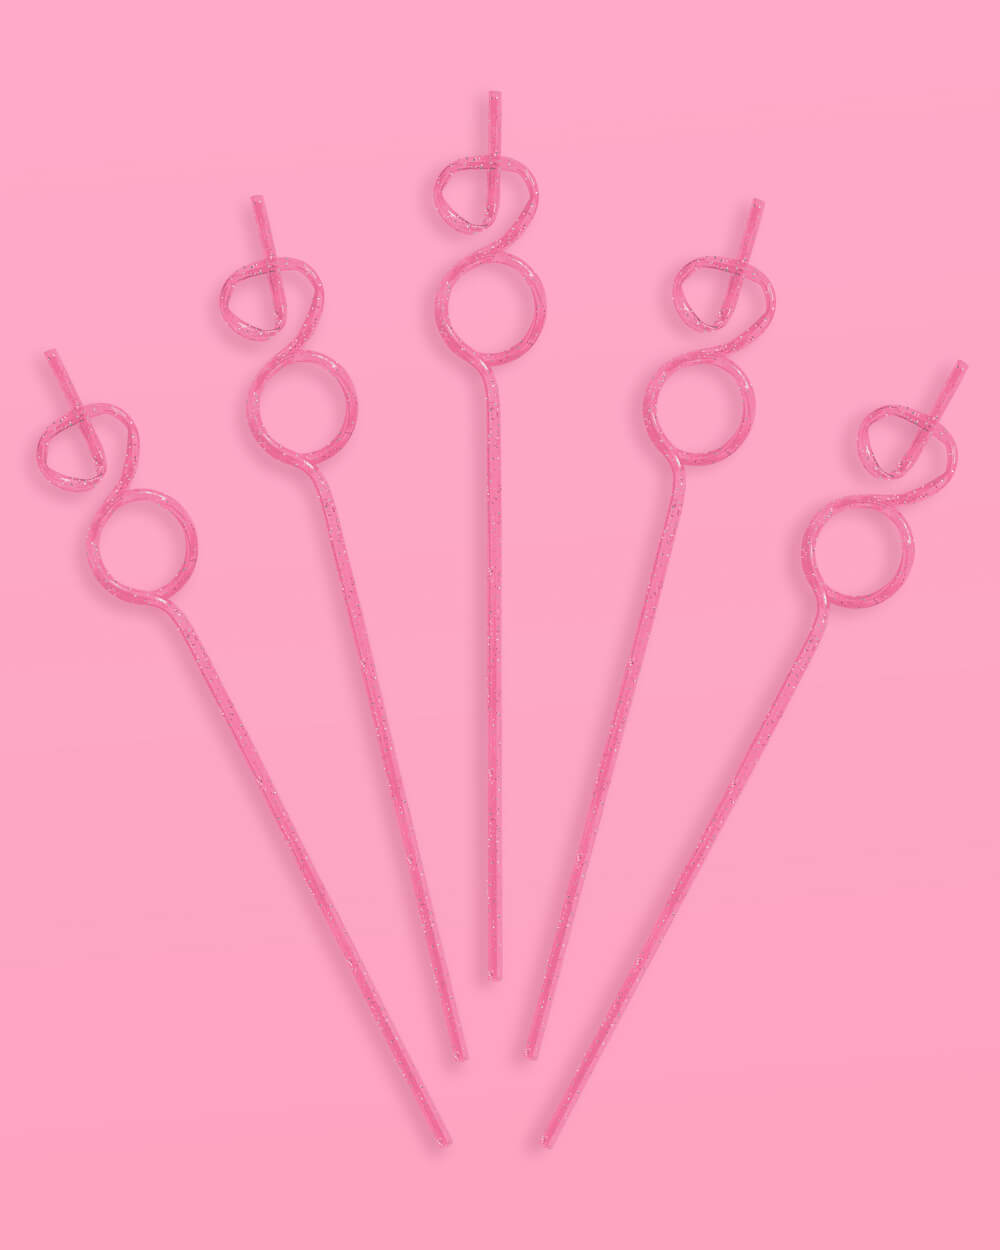 Bling Ring Straws - 16 reusable straws